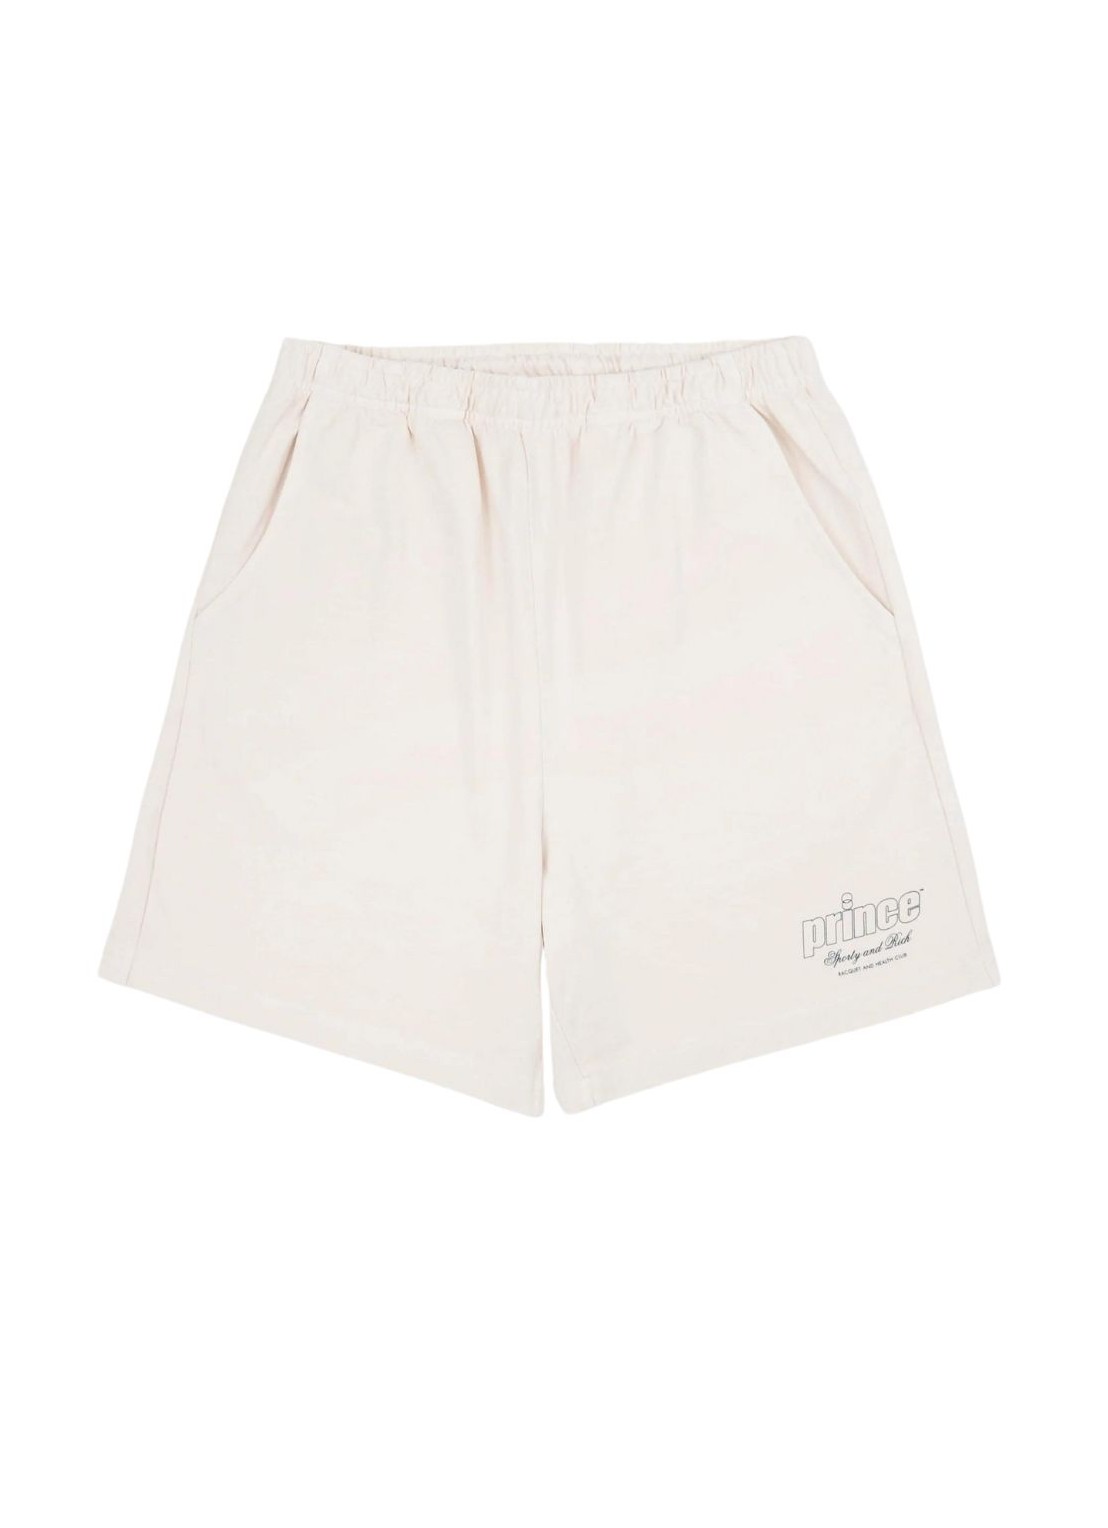 Pantalon corto sporty & rich short pant woman prince health gym shorts sh021s414pc cream talla L
 